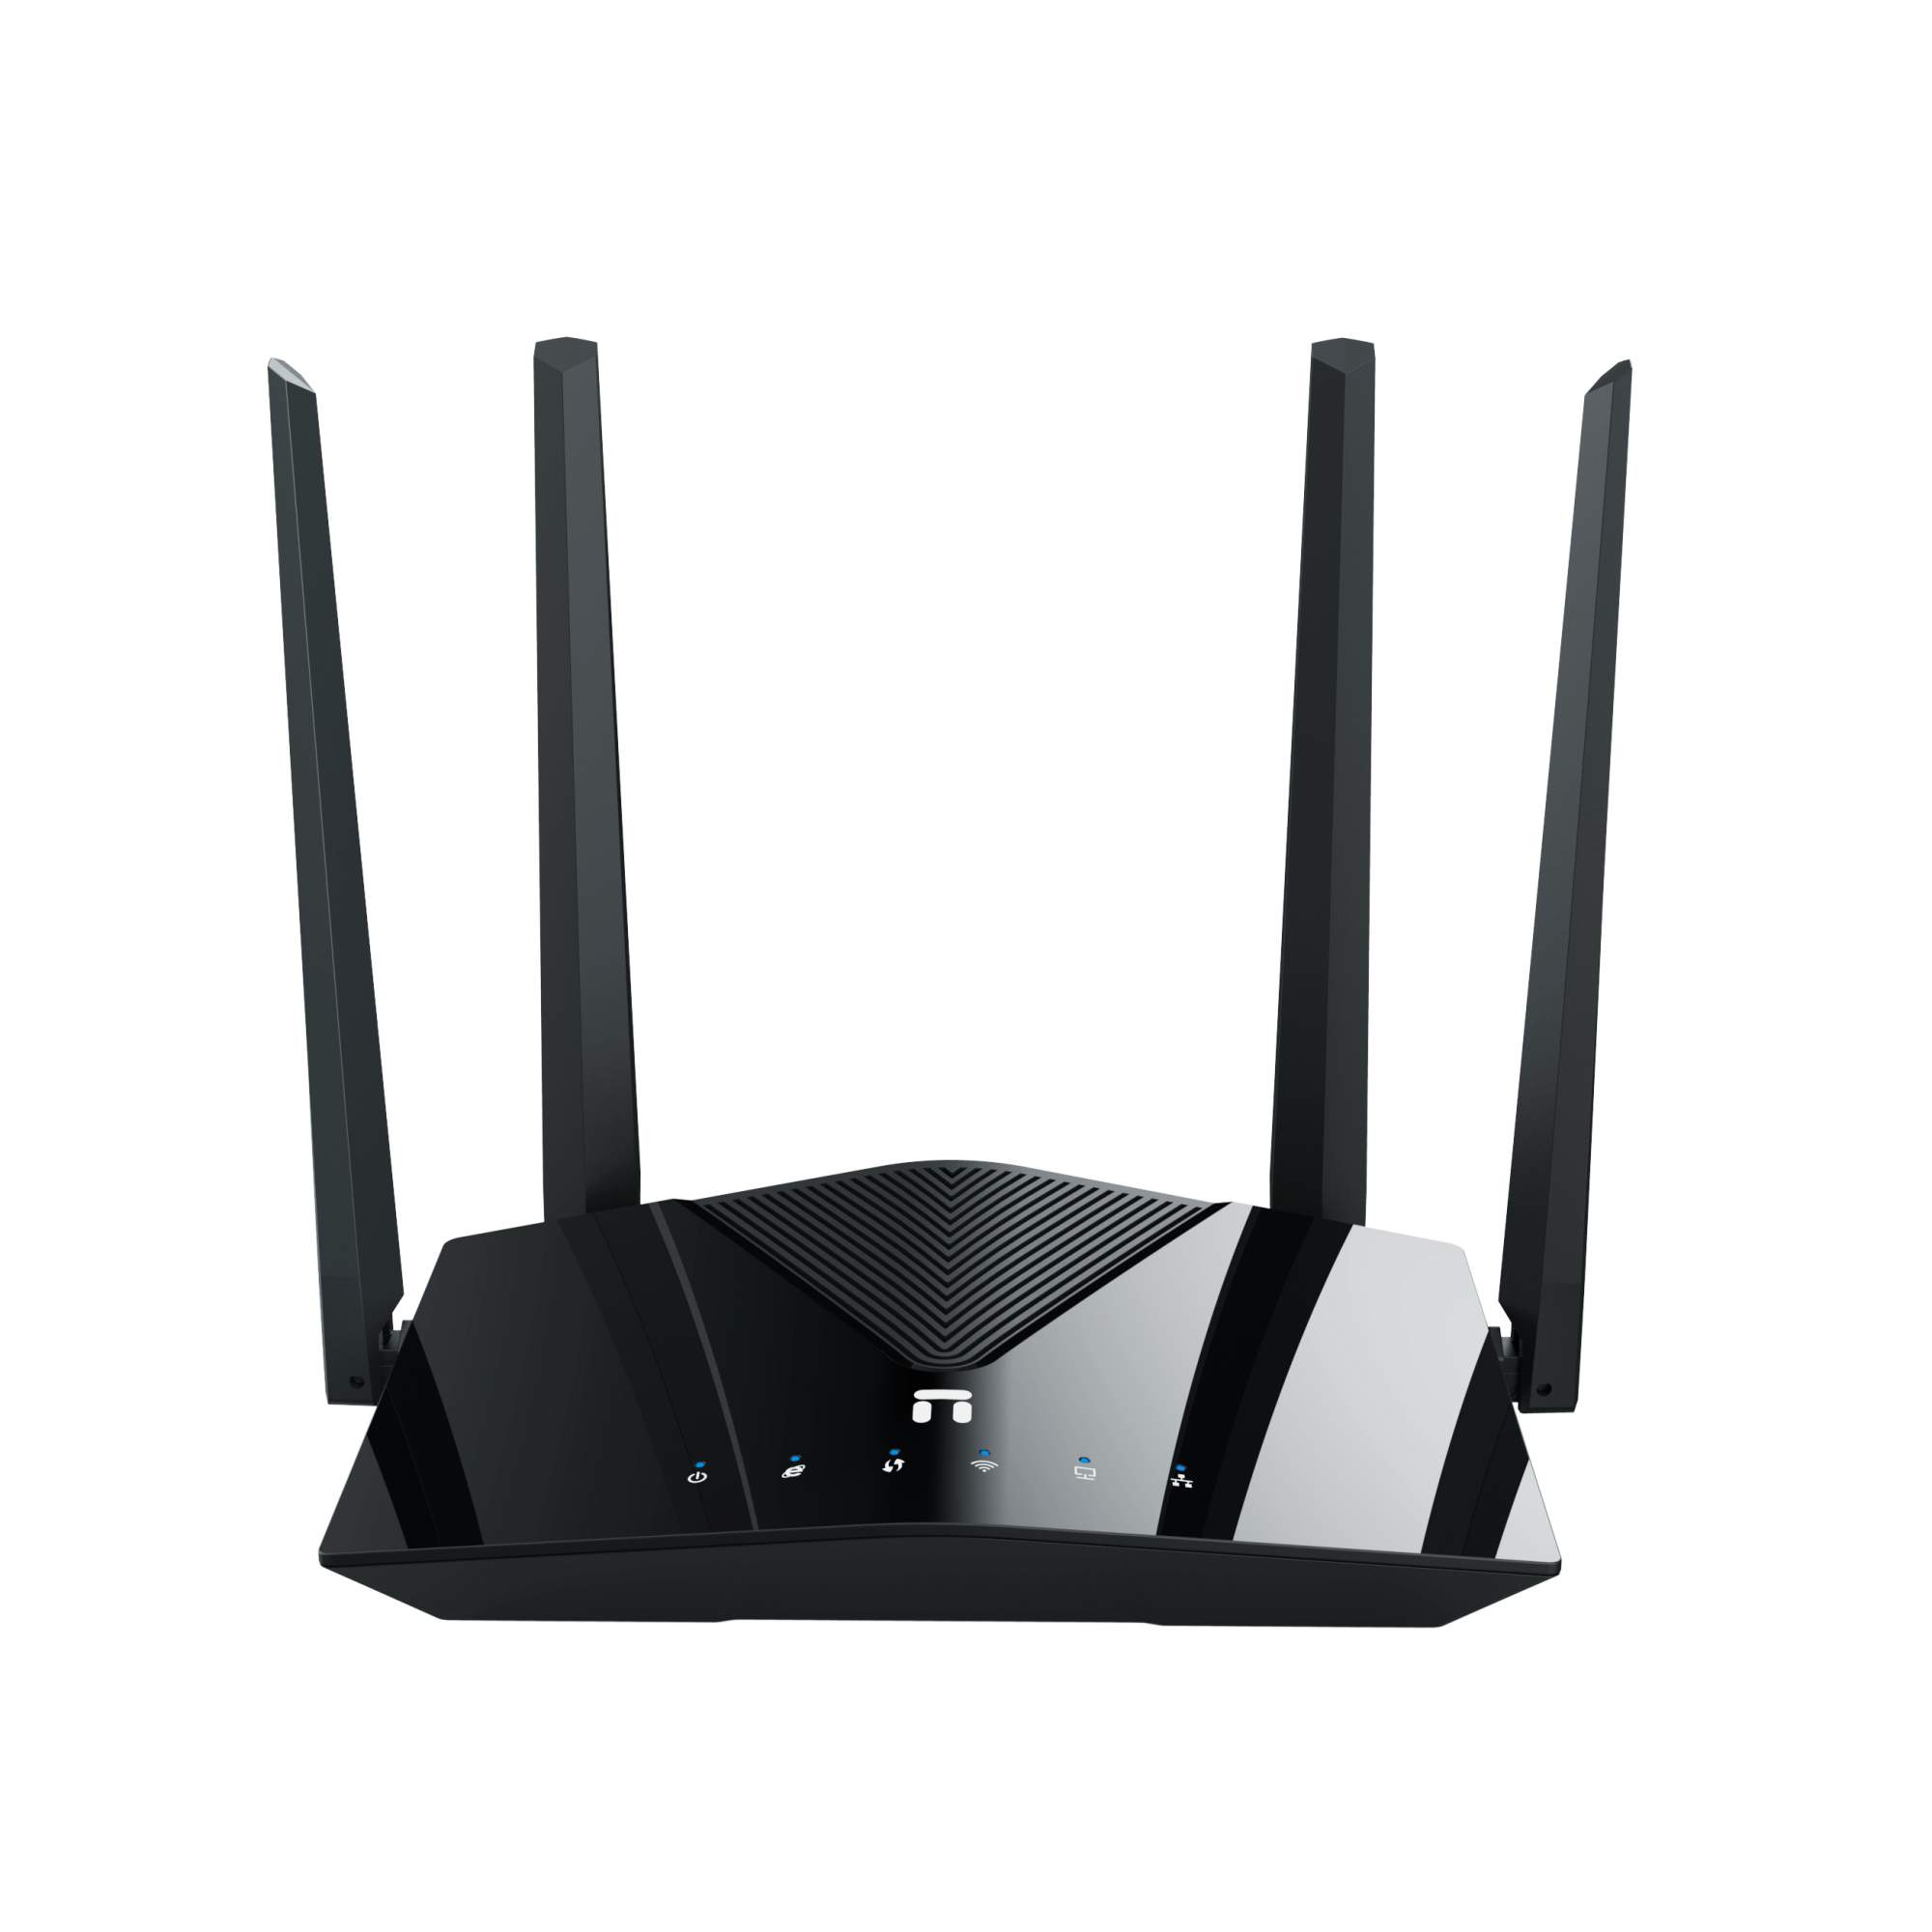 Роутер Wi-Fi Netis NX10 двухдиапазонный, с поддержкой Easy Mesh - отзывы покупателей на маркетплейсе Мегамаркет | Артикул: 100063097484